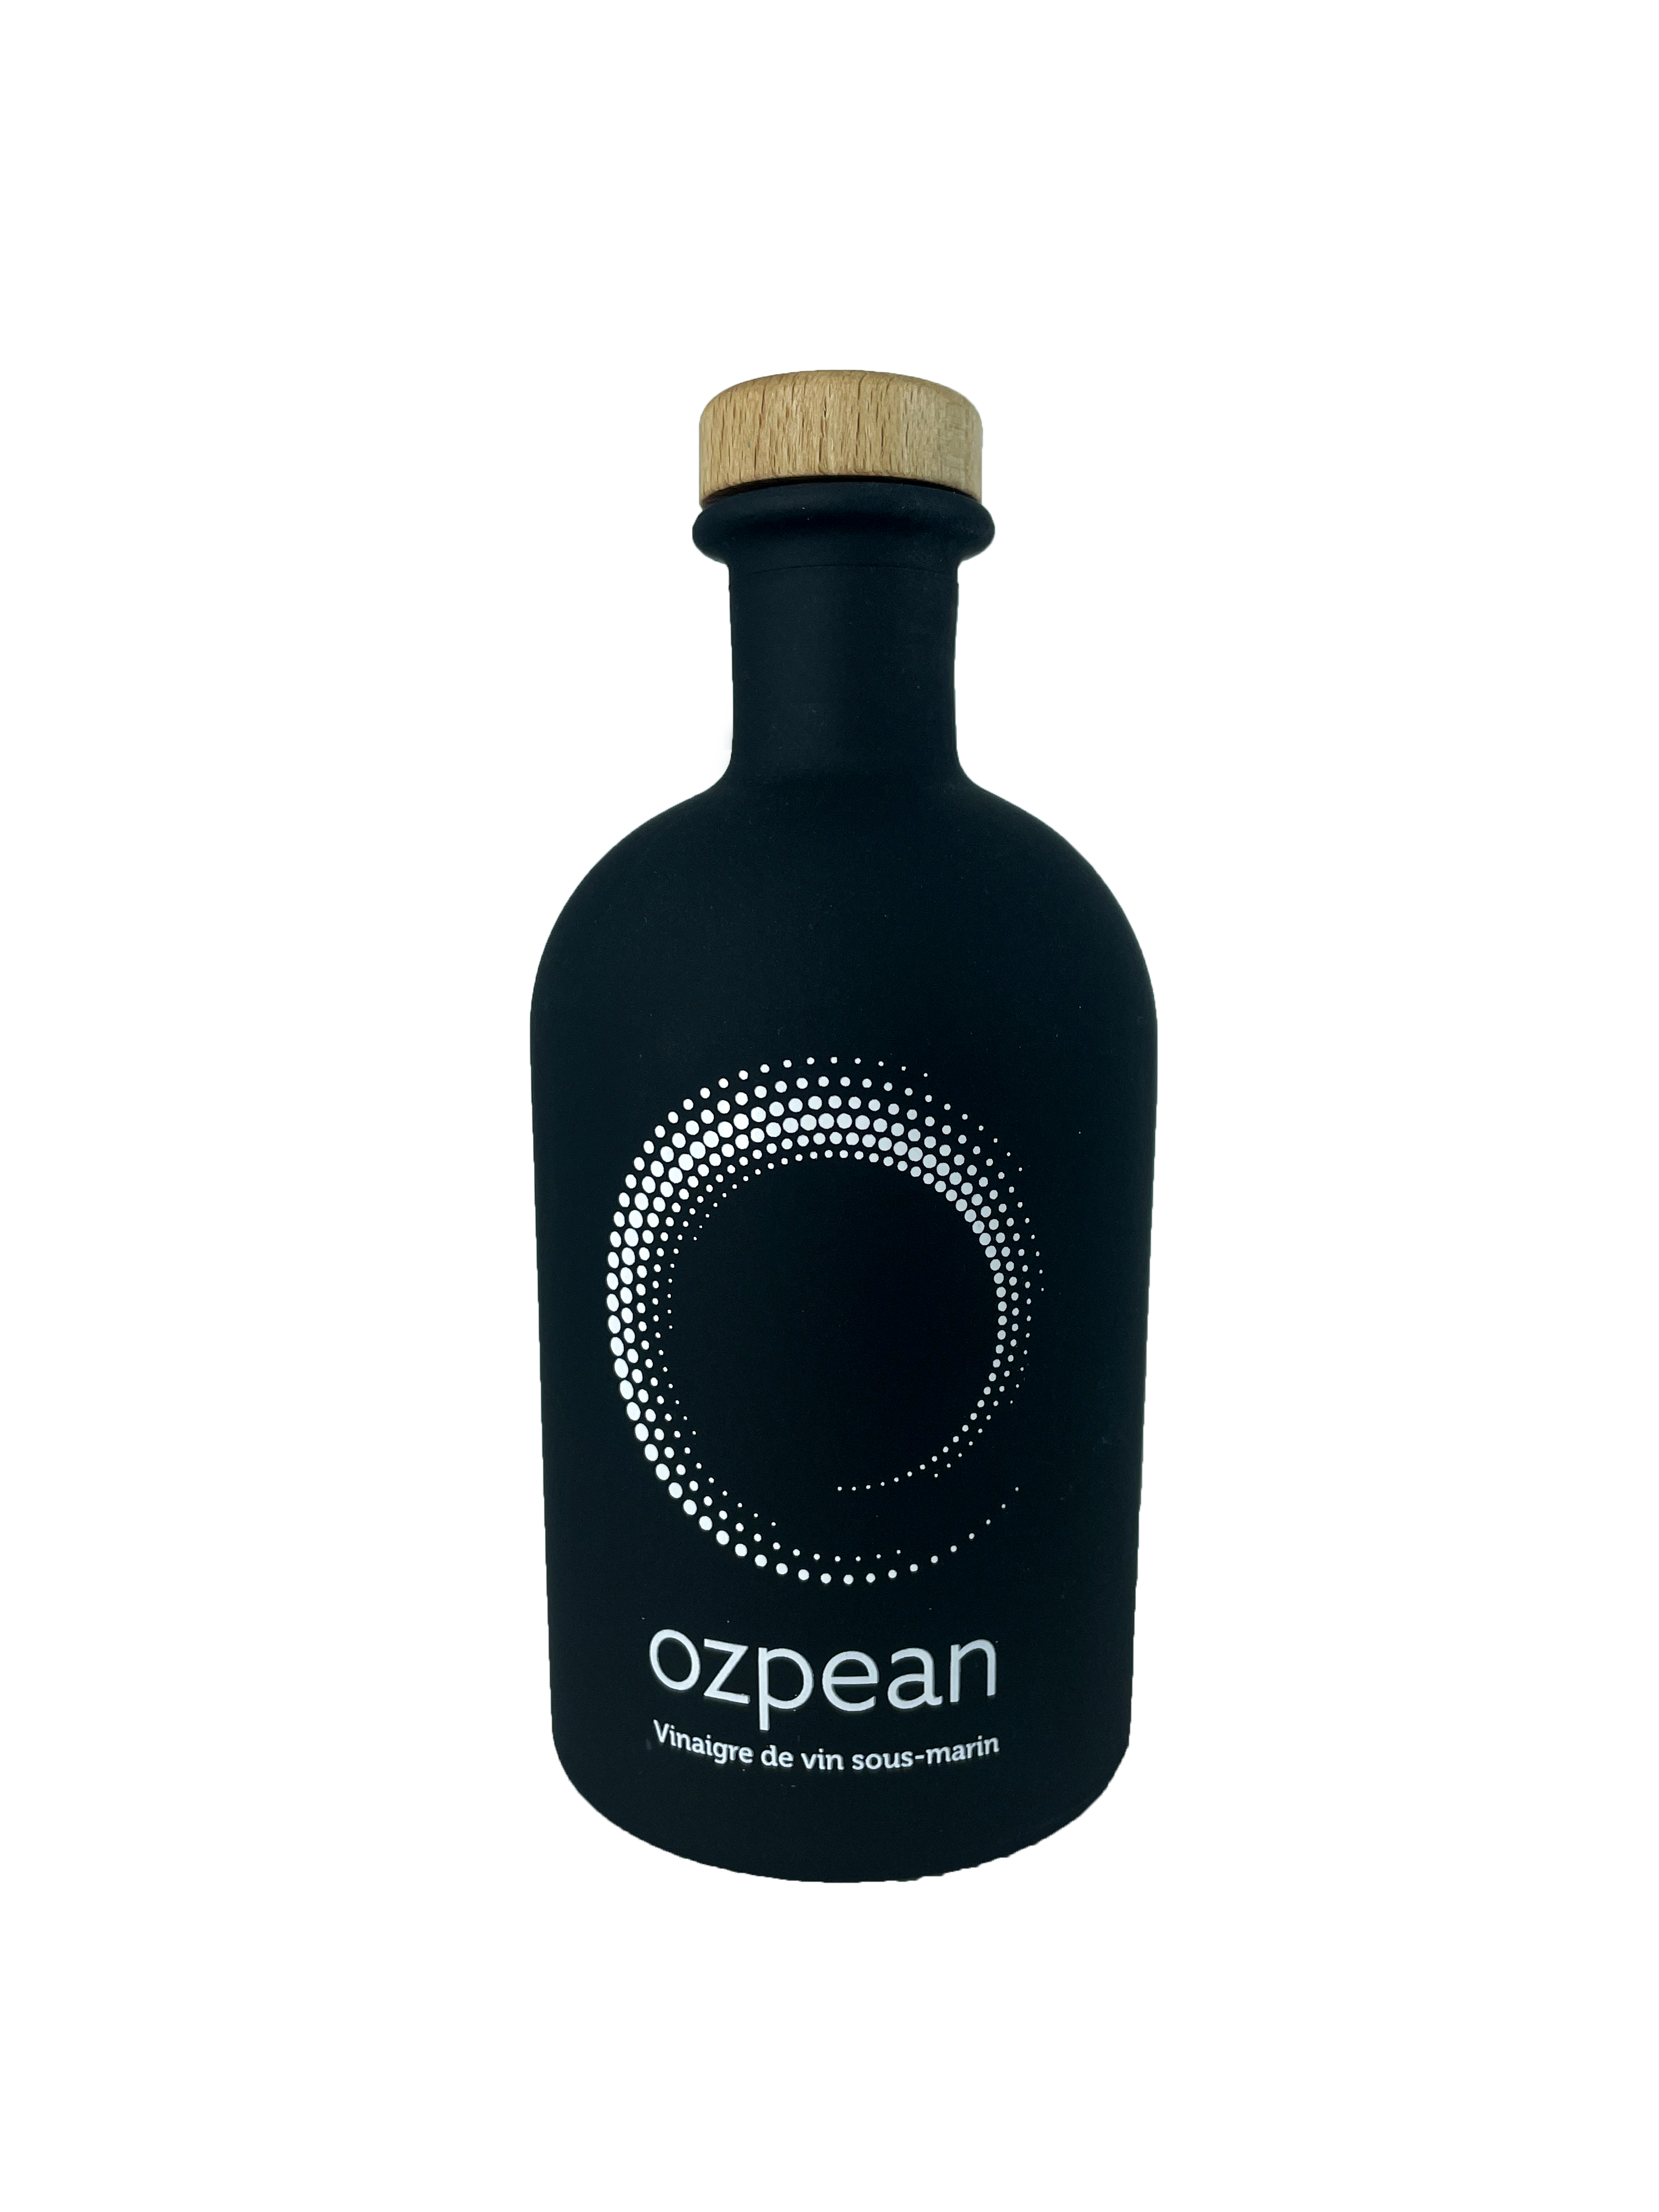 OZPEAN, Vinaigre de vin sous-marin